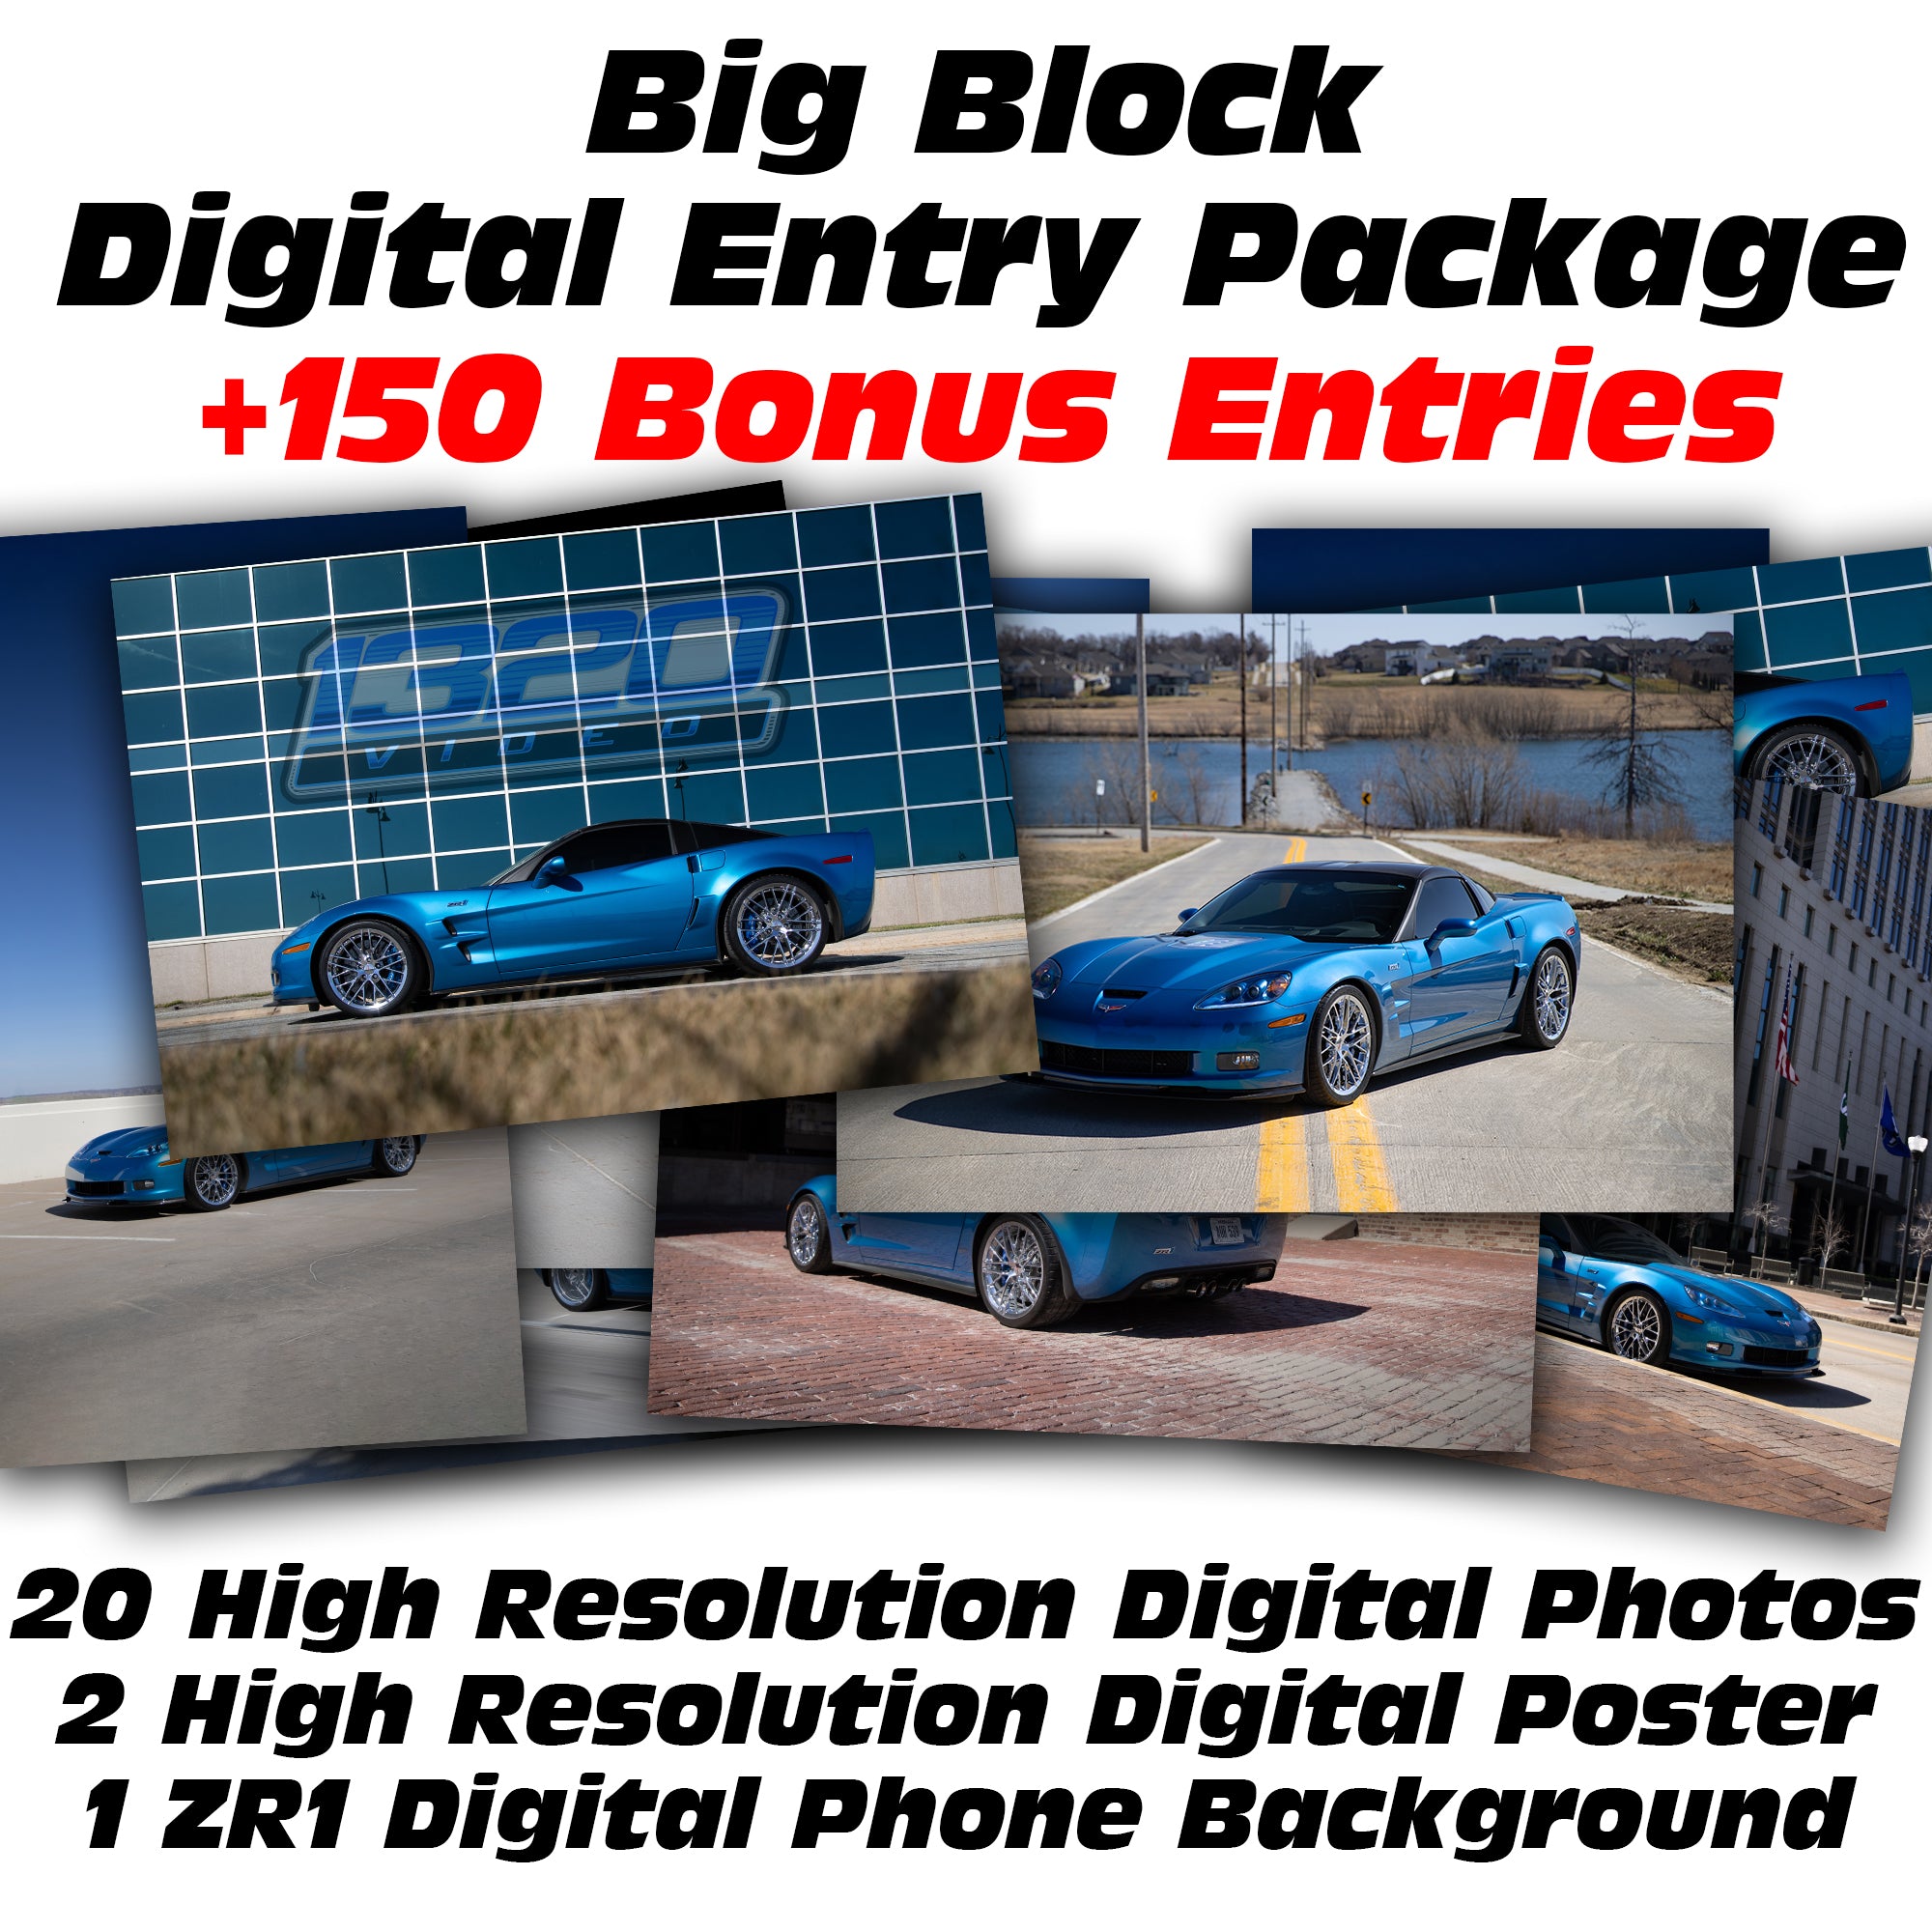 Big Block Digital Entry Package